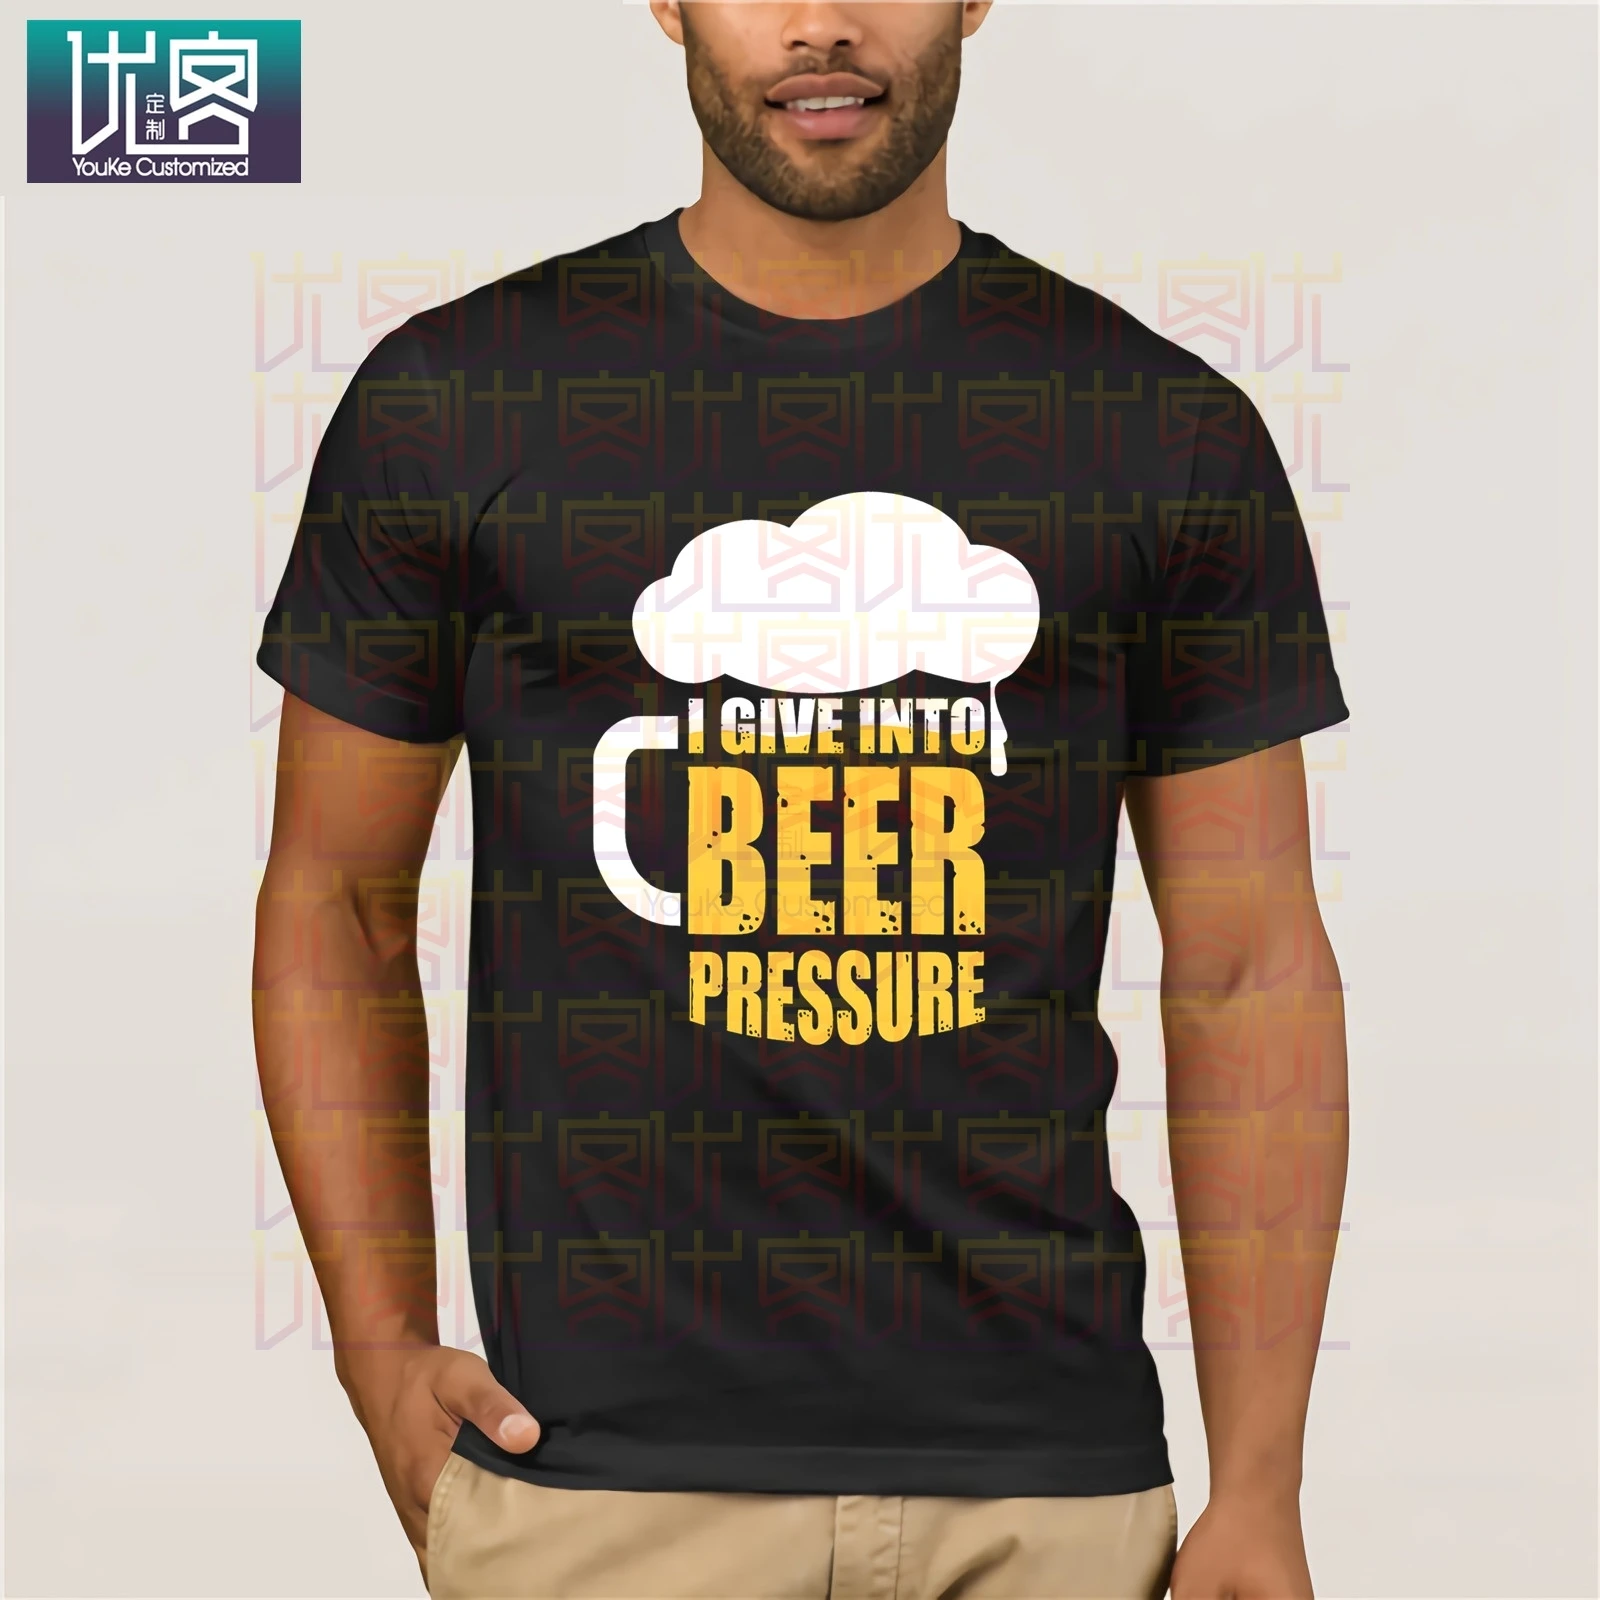 Фото Футболка с надписью I give into Beer pressure популярная футболка круглым вырезом 100% хлопок